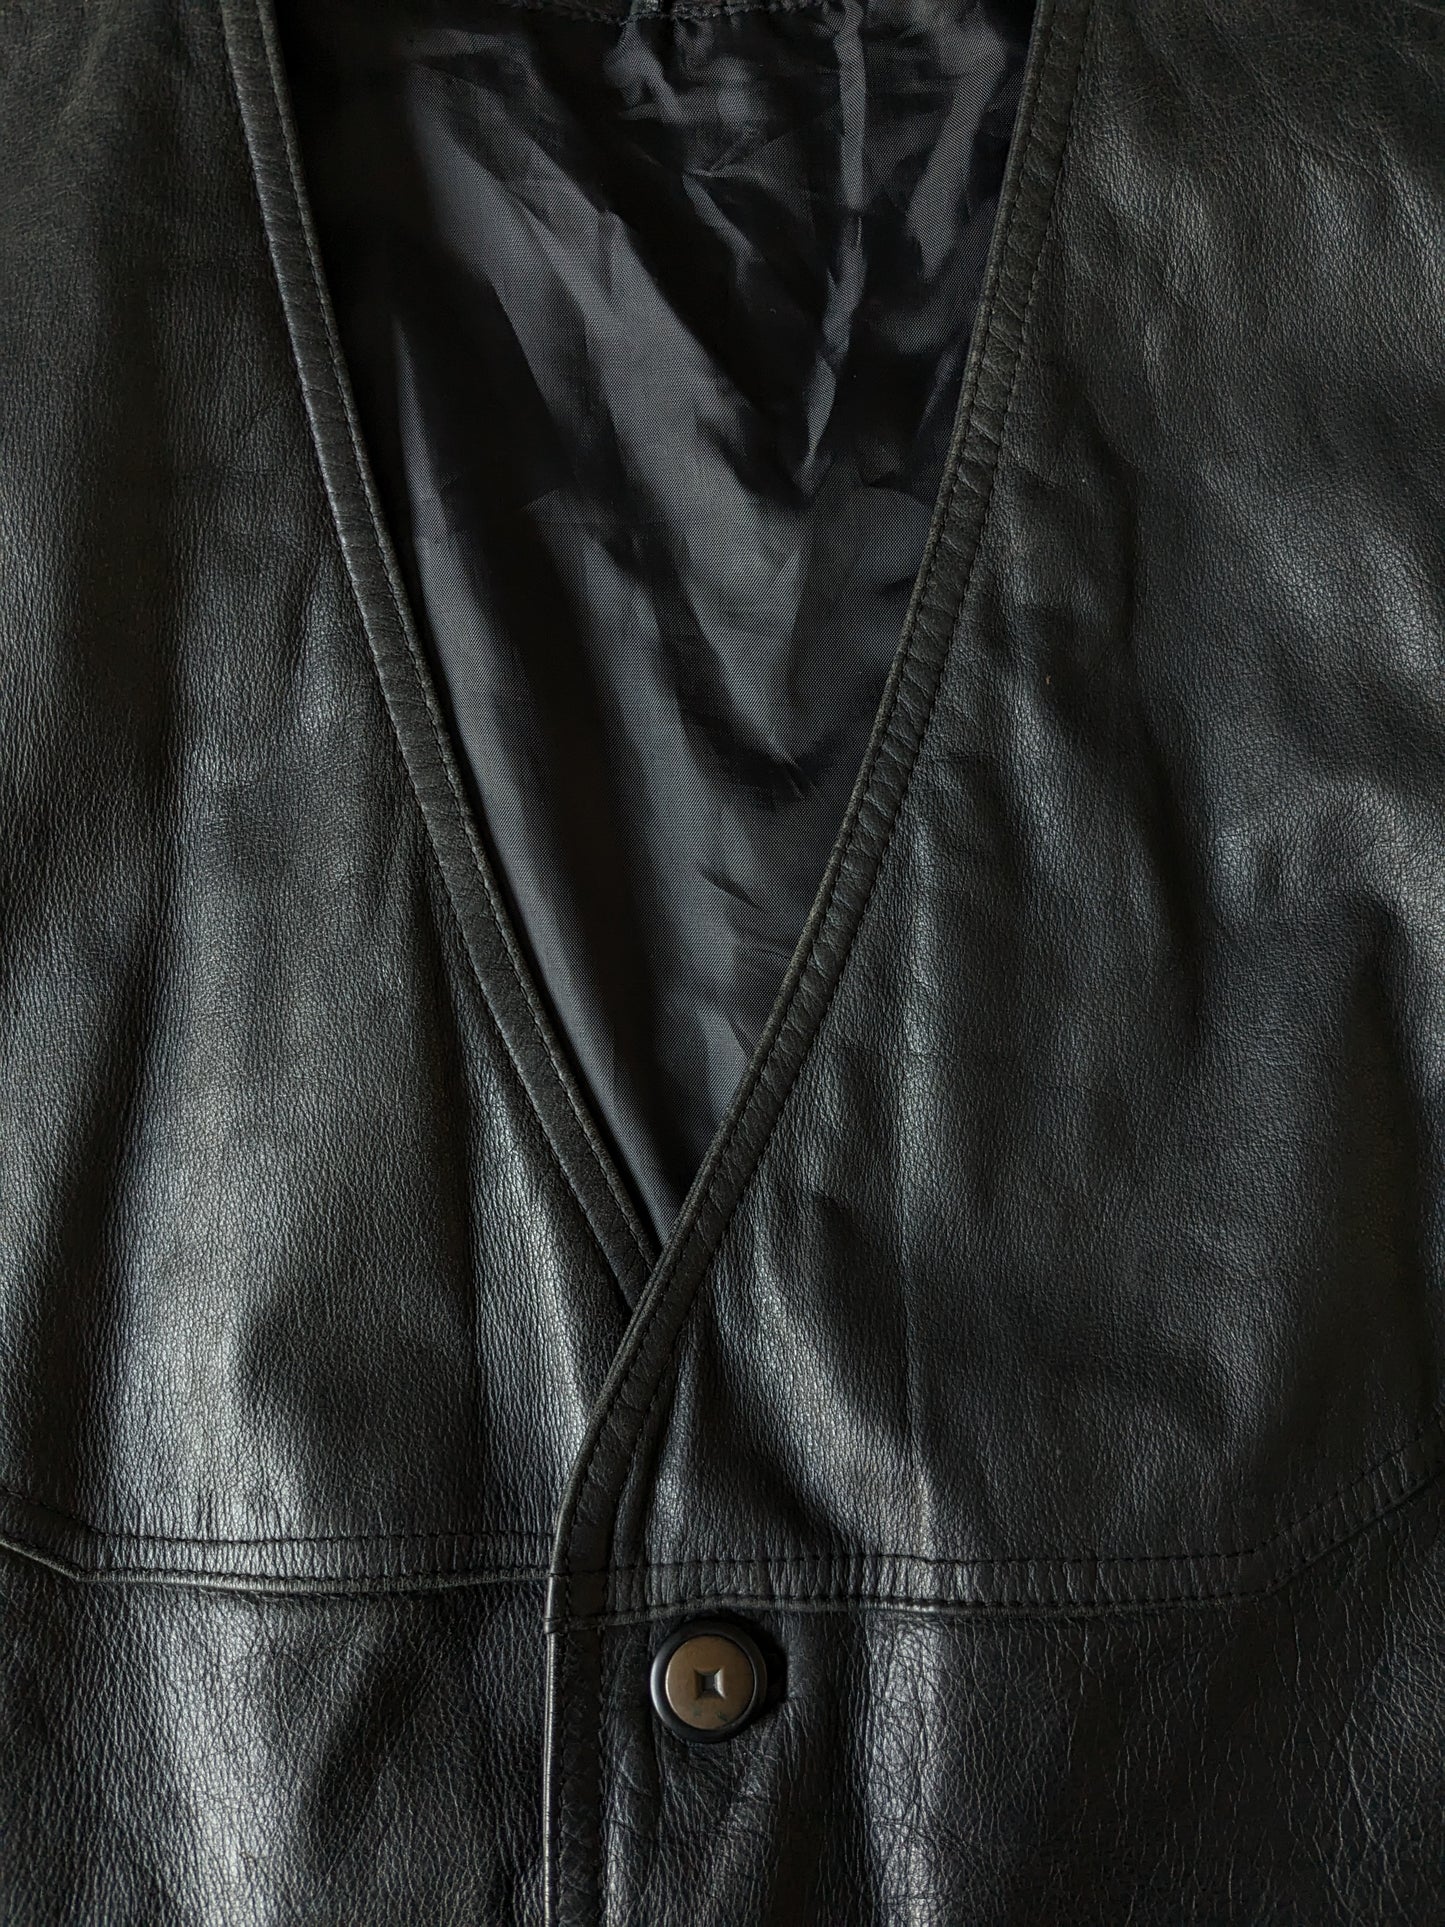 B Choix: gilet en cuir à double faces vintage avec 3 poches intérieures. Noir. Taille L. Mist 1 Knoop.